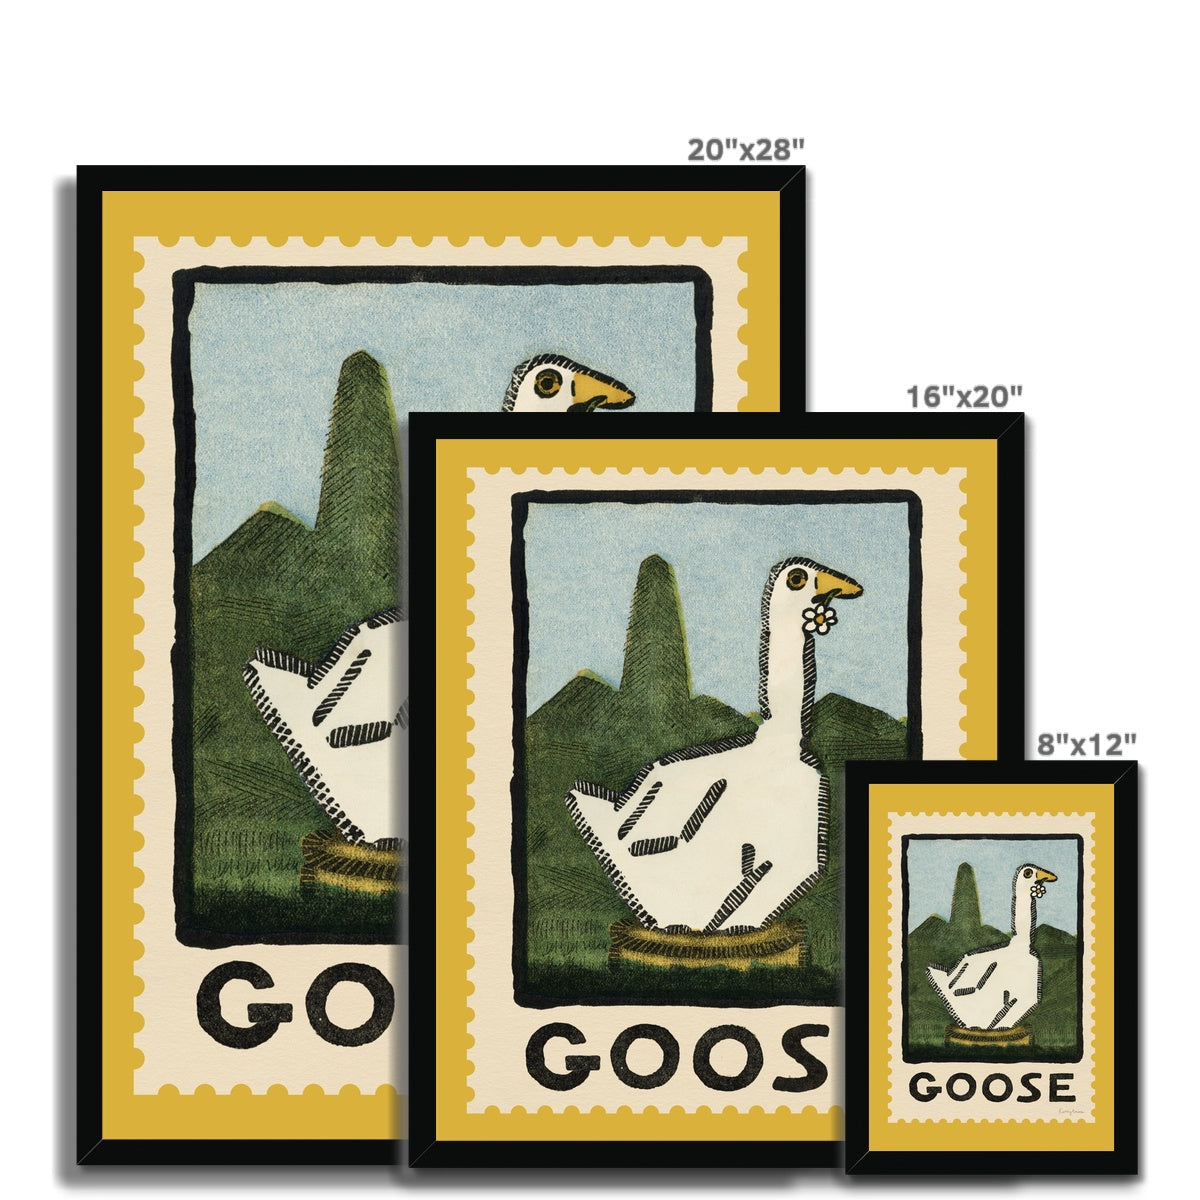 Goose Vintage Postage Stamp Framed Fine Art Print